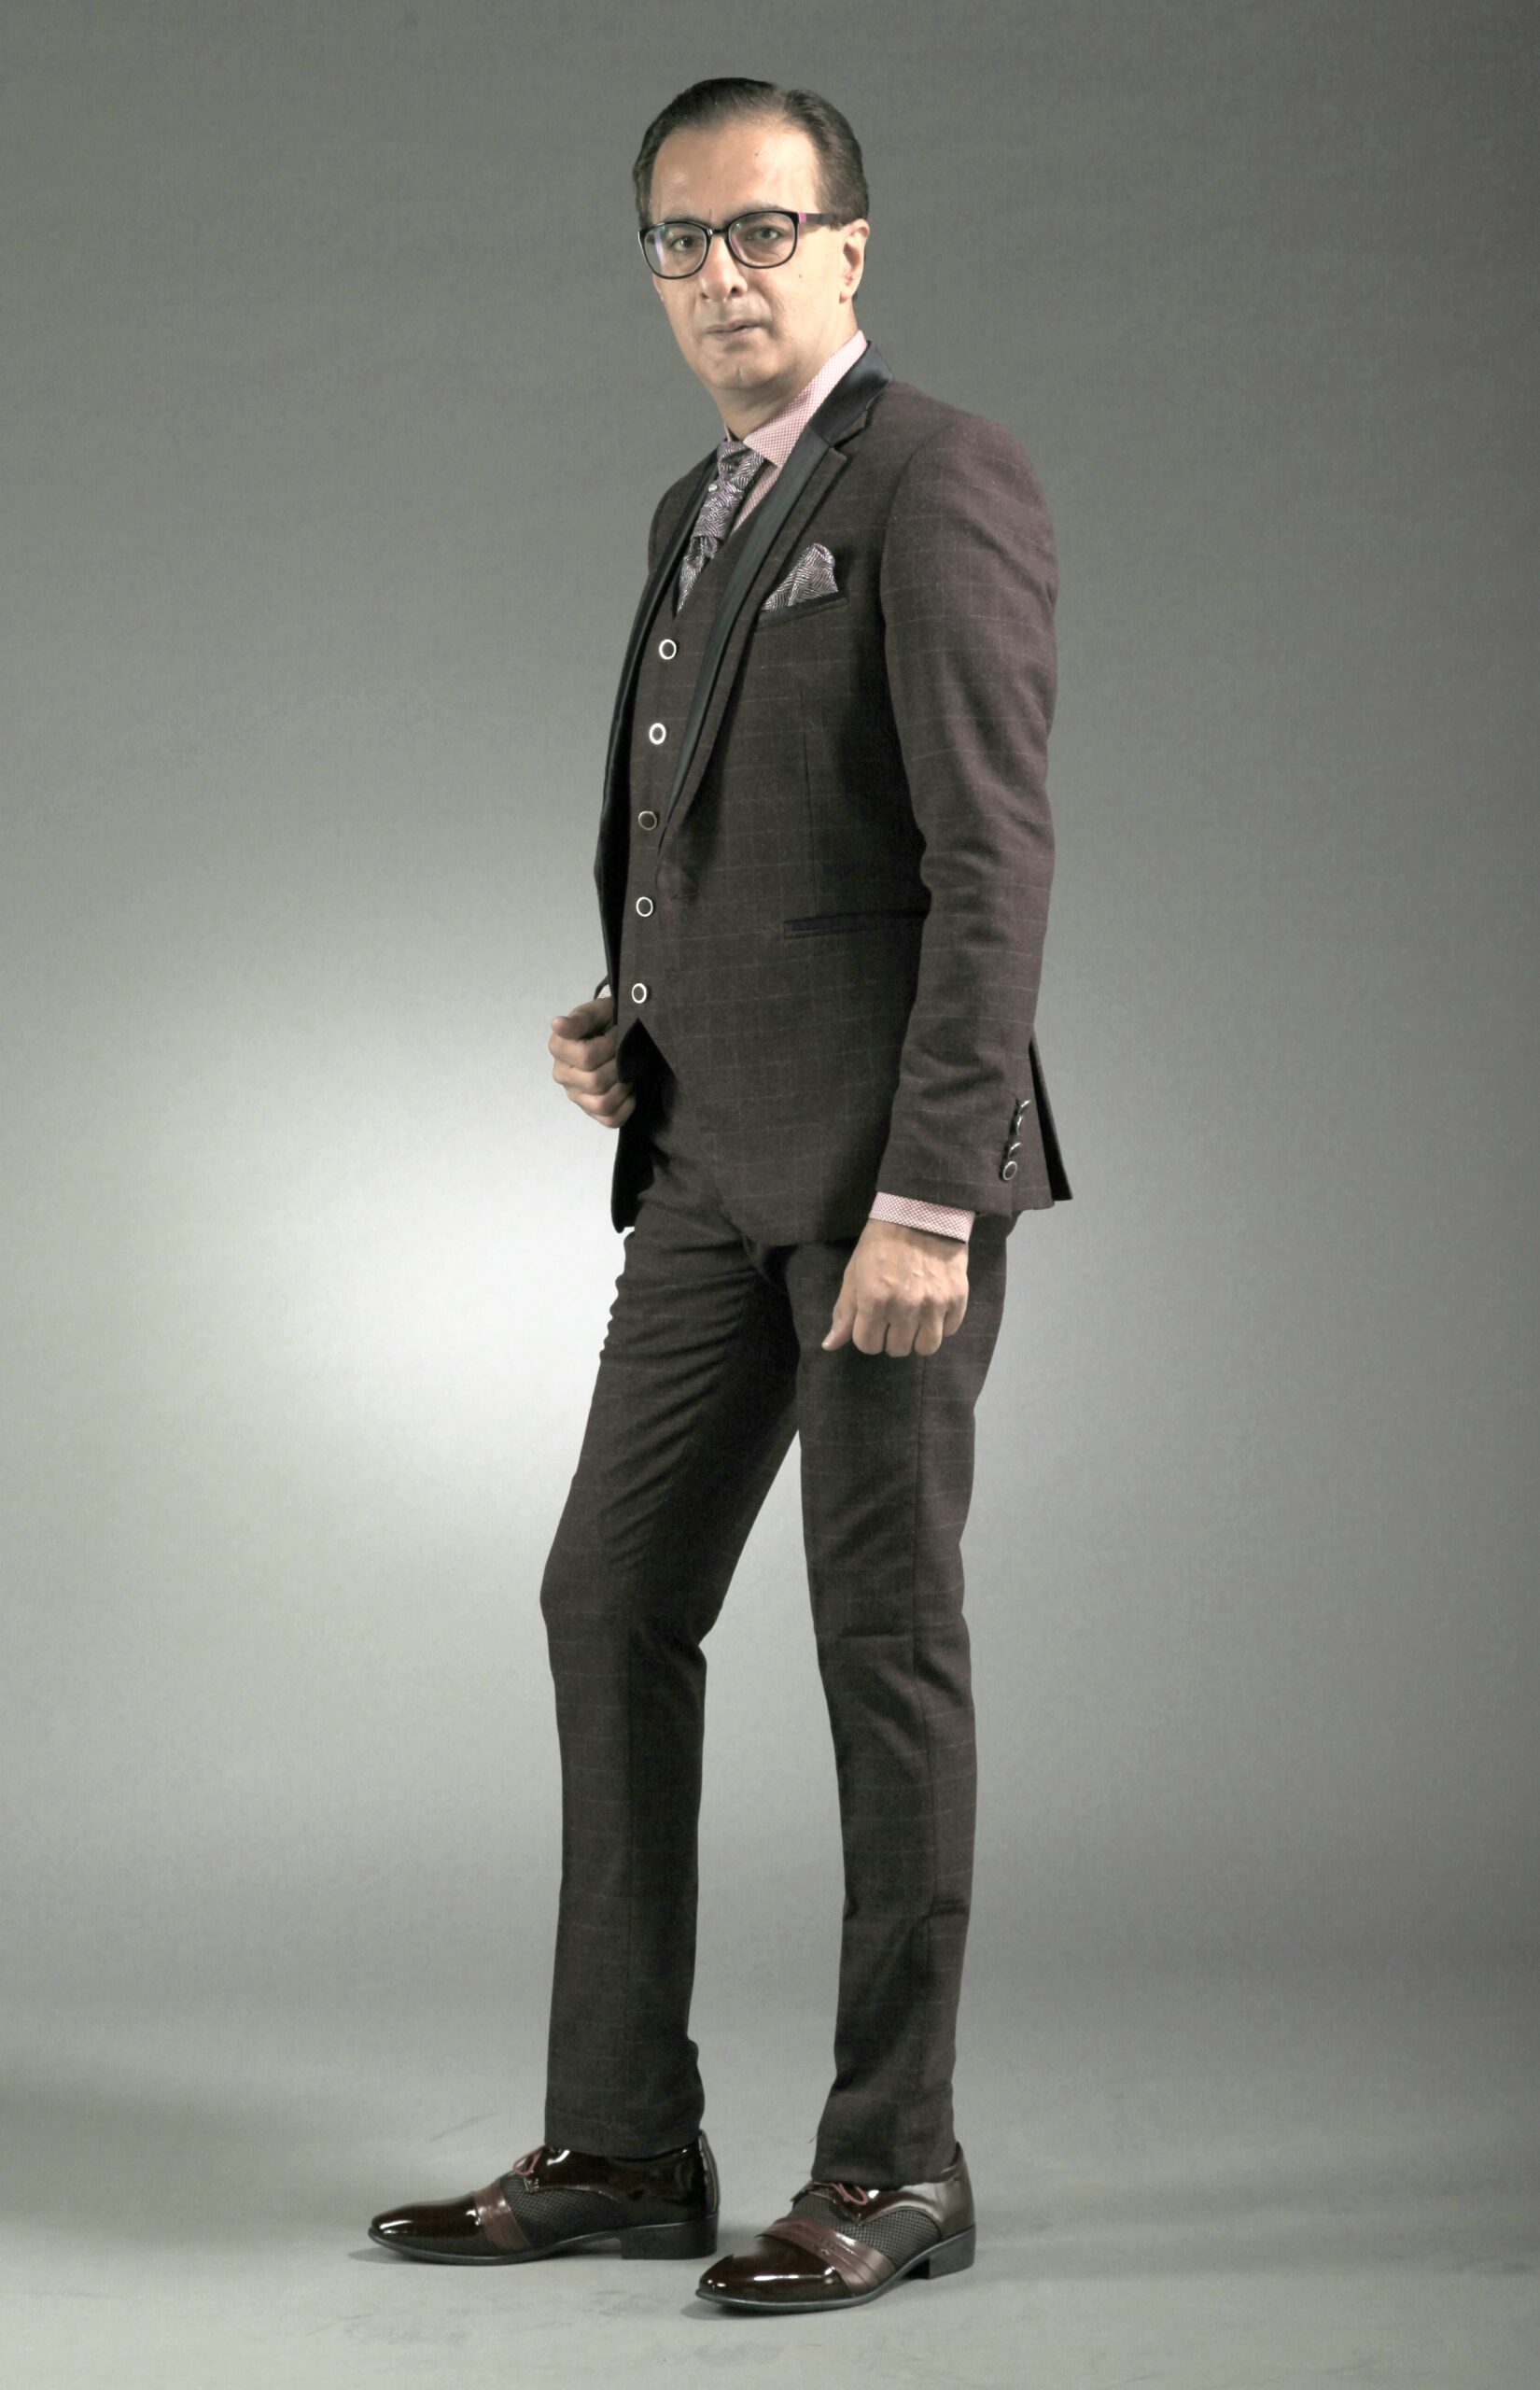 Mst 5069 03 Rent Rental Hire Tuxedo Suit Black Tie Suit Designer Suits Shop Tailor Tailors Singapore Wedding